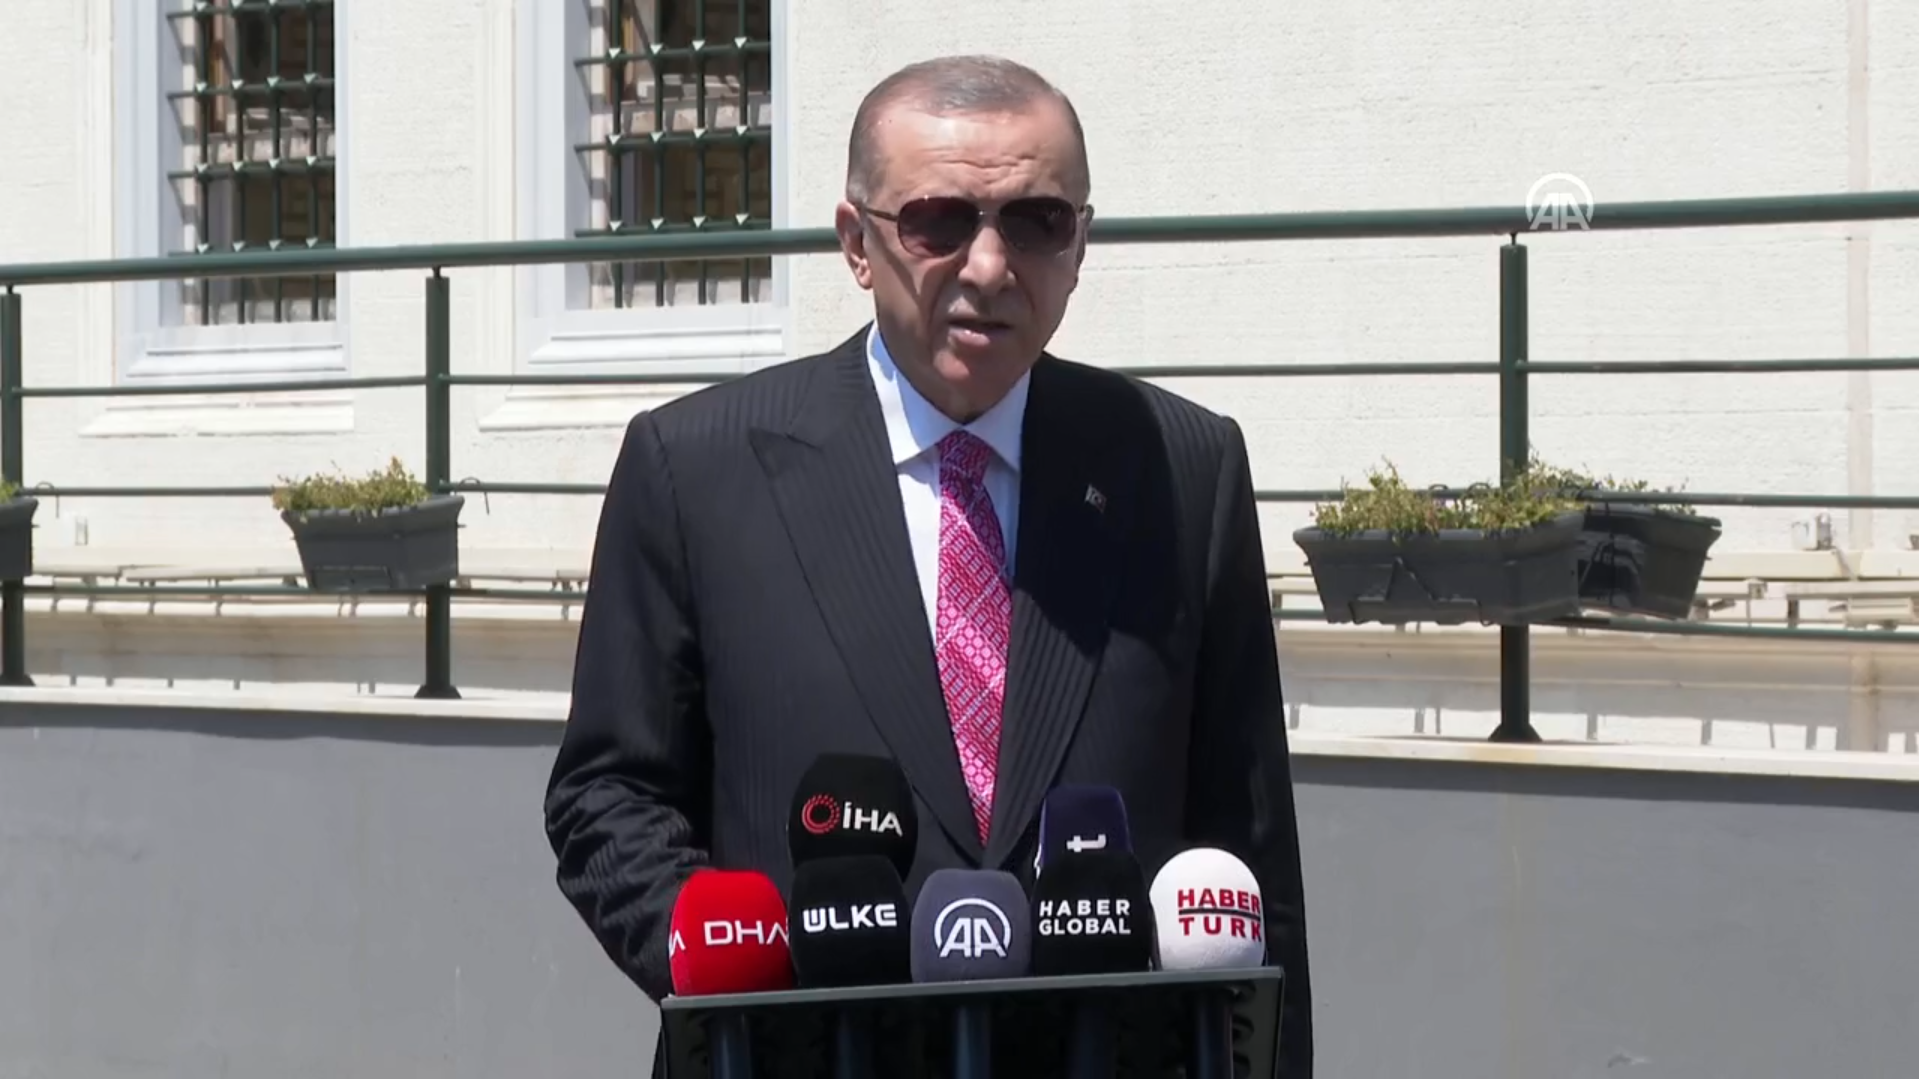 Cuma namazı sonrası Cumhurbaşkanı Erdoğan’dan önemli açıklamalar